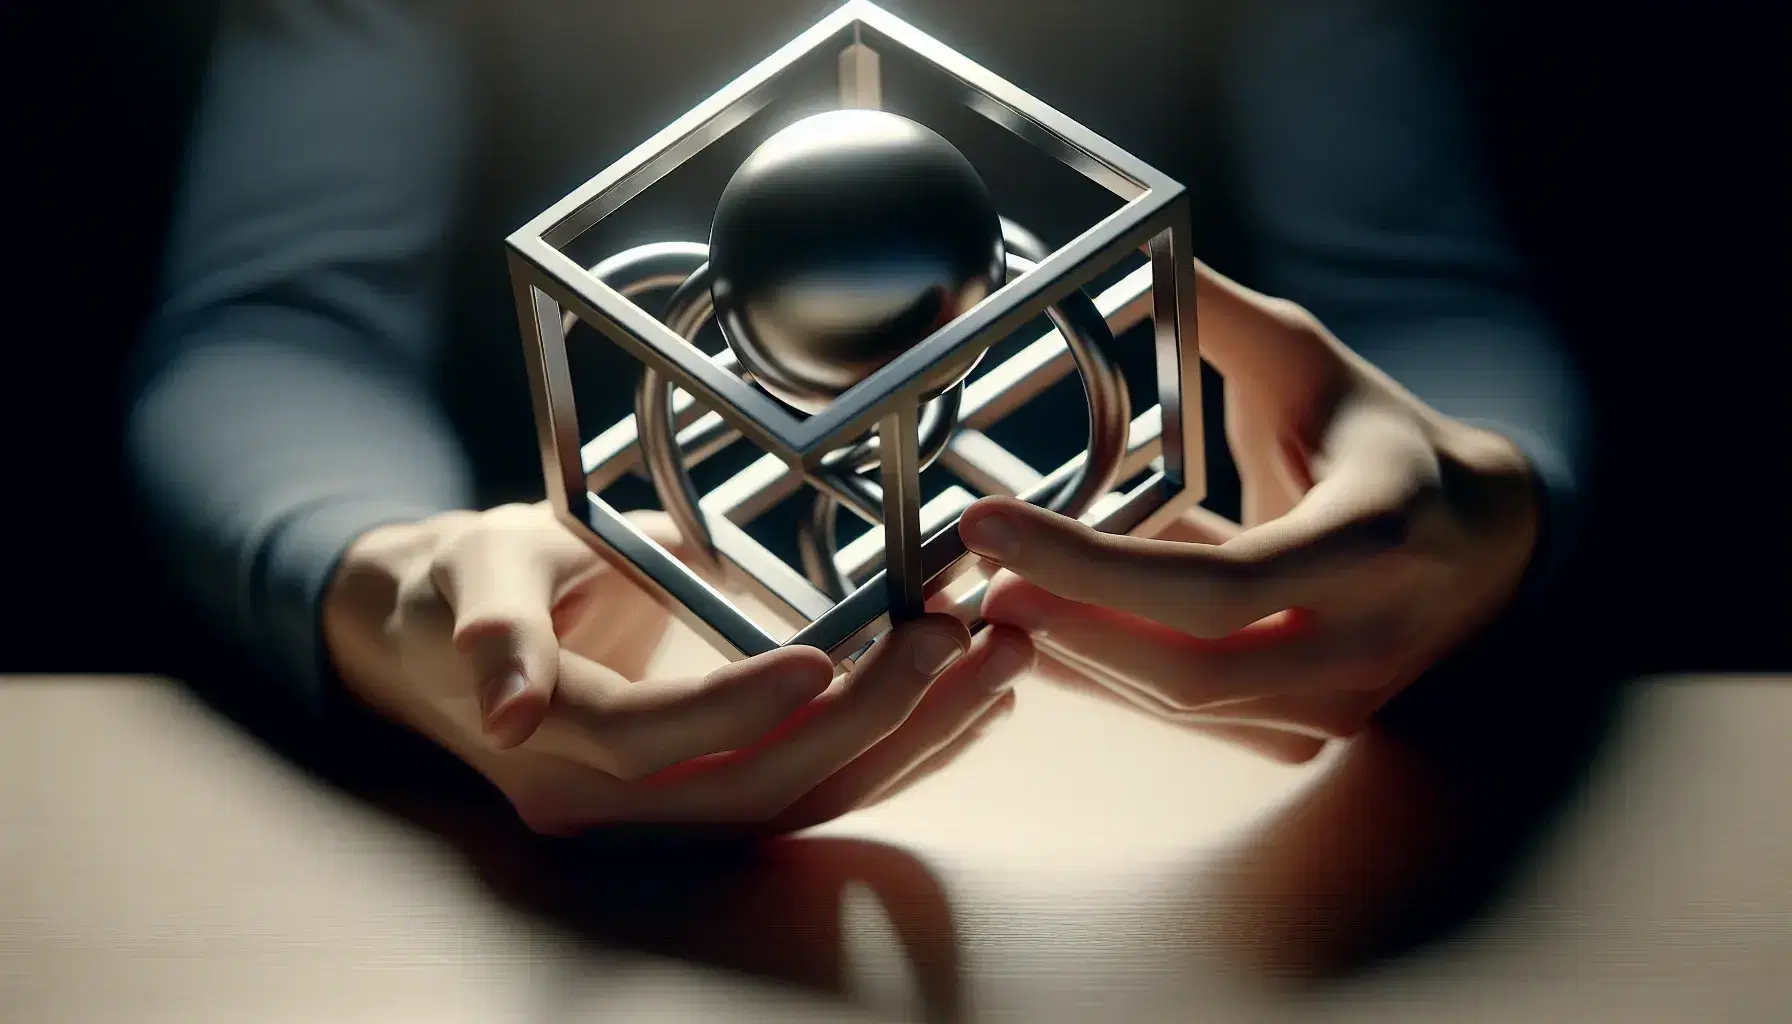 Manos sujetando modelo 3D de cubo y esfera entrelazados de material metálico sobre superficie clara, reflejando luz suave y sin textos visibles.